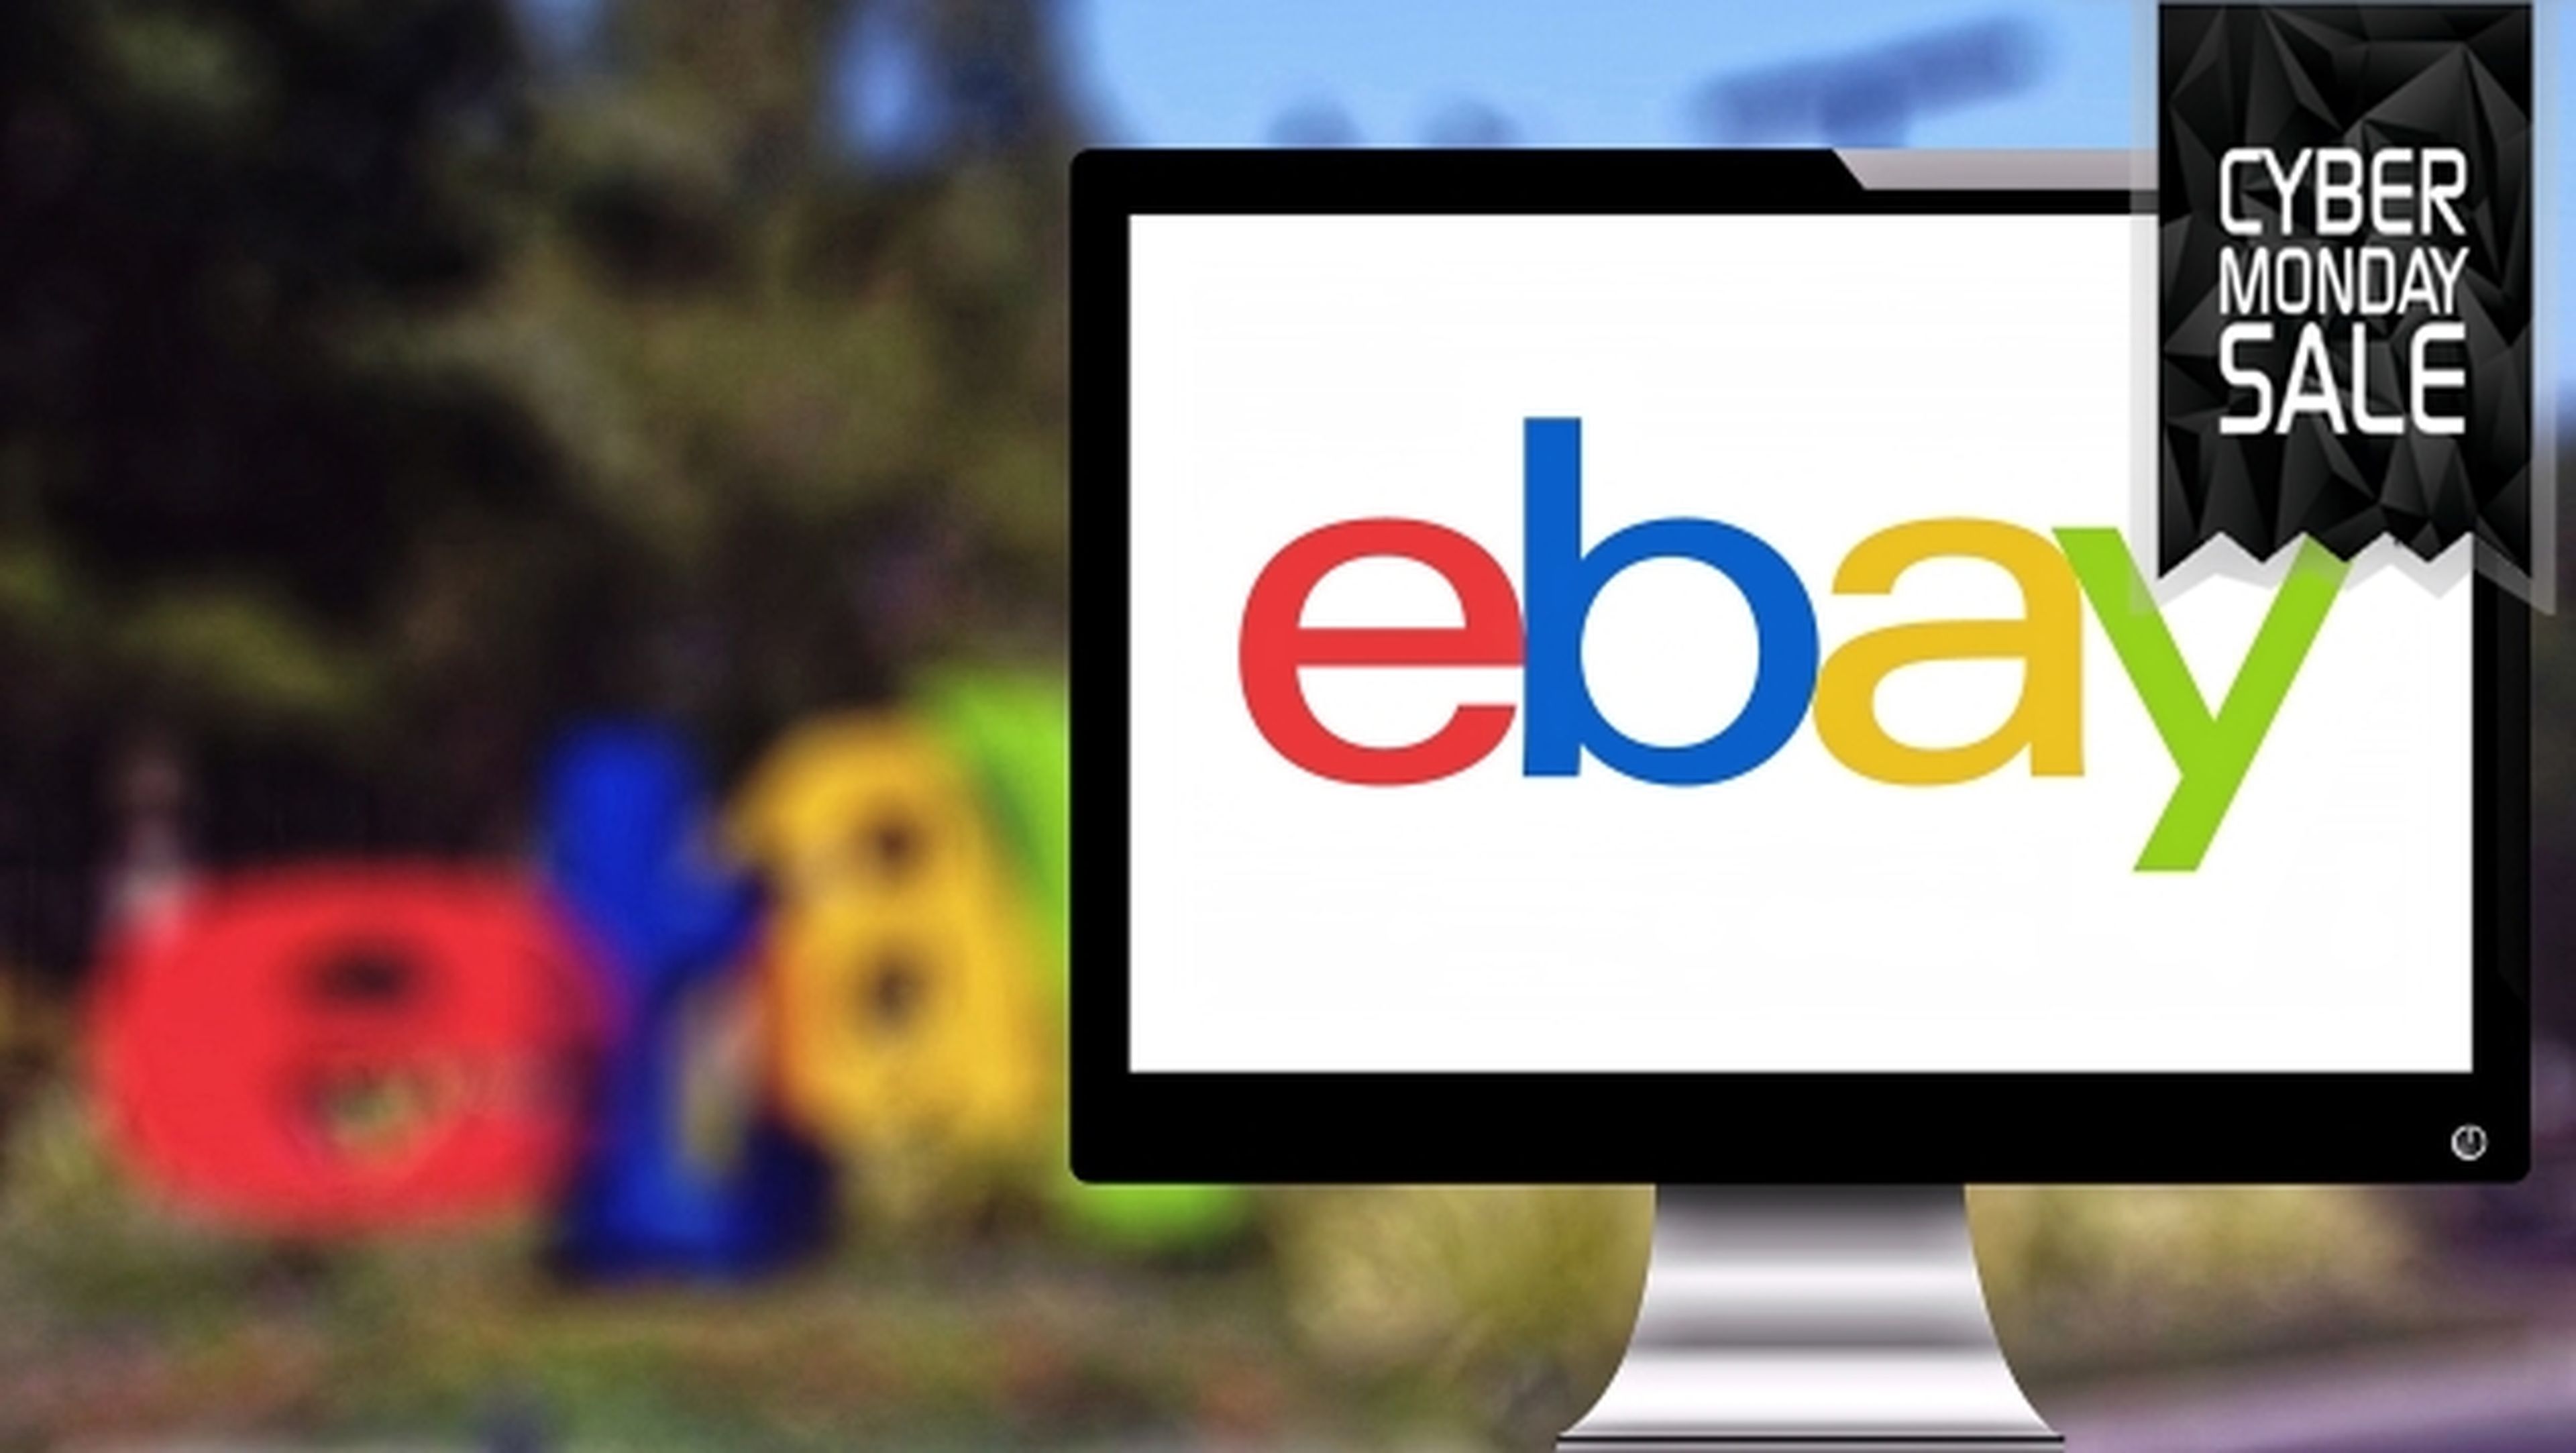 Las mejores ofertas del Cyber Monday en eBay: móviles, ordenadores, televisores, tablets, consolas y videojuegos